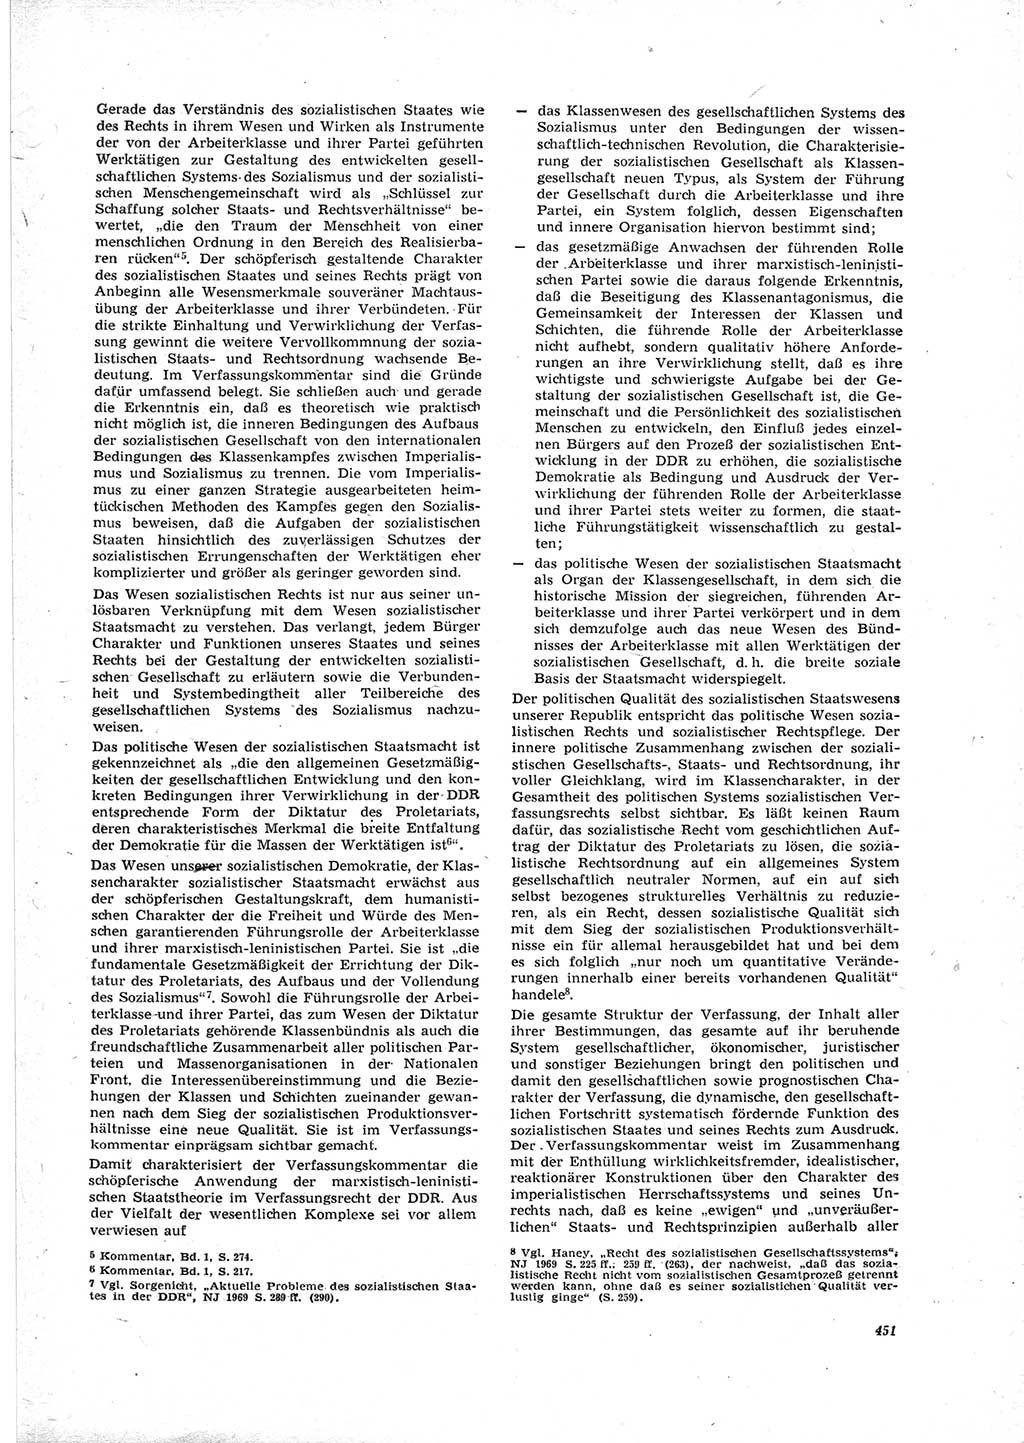 Neue Justiz (NJ), Zeitschrift für Recht und Rechtswissenschaft [Deutsche Demokratische Republik (DDR)], 23. Jahrgang 1969, Seite 451 (NJ DDR 1969, S. 451)